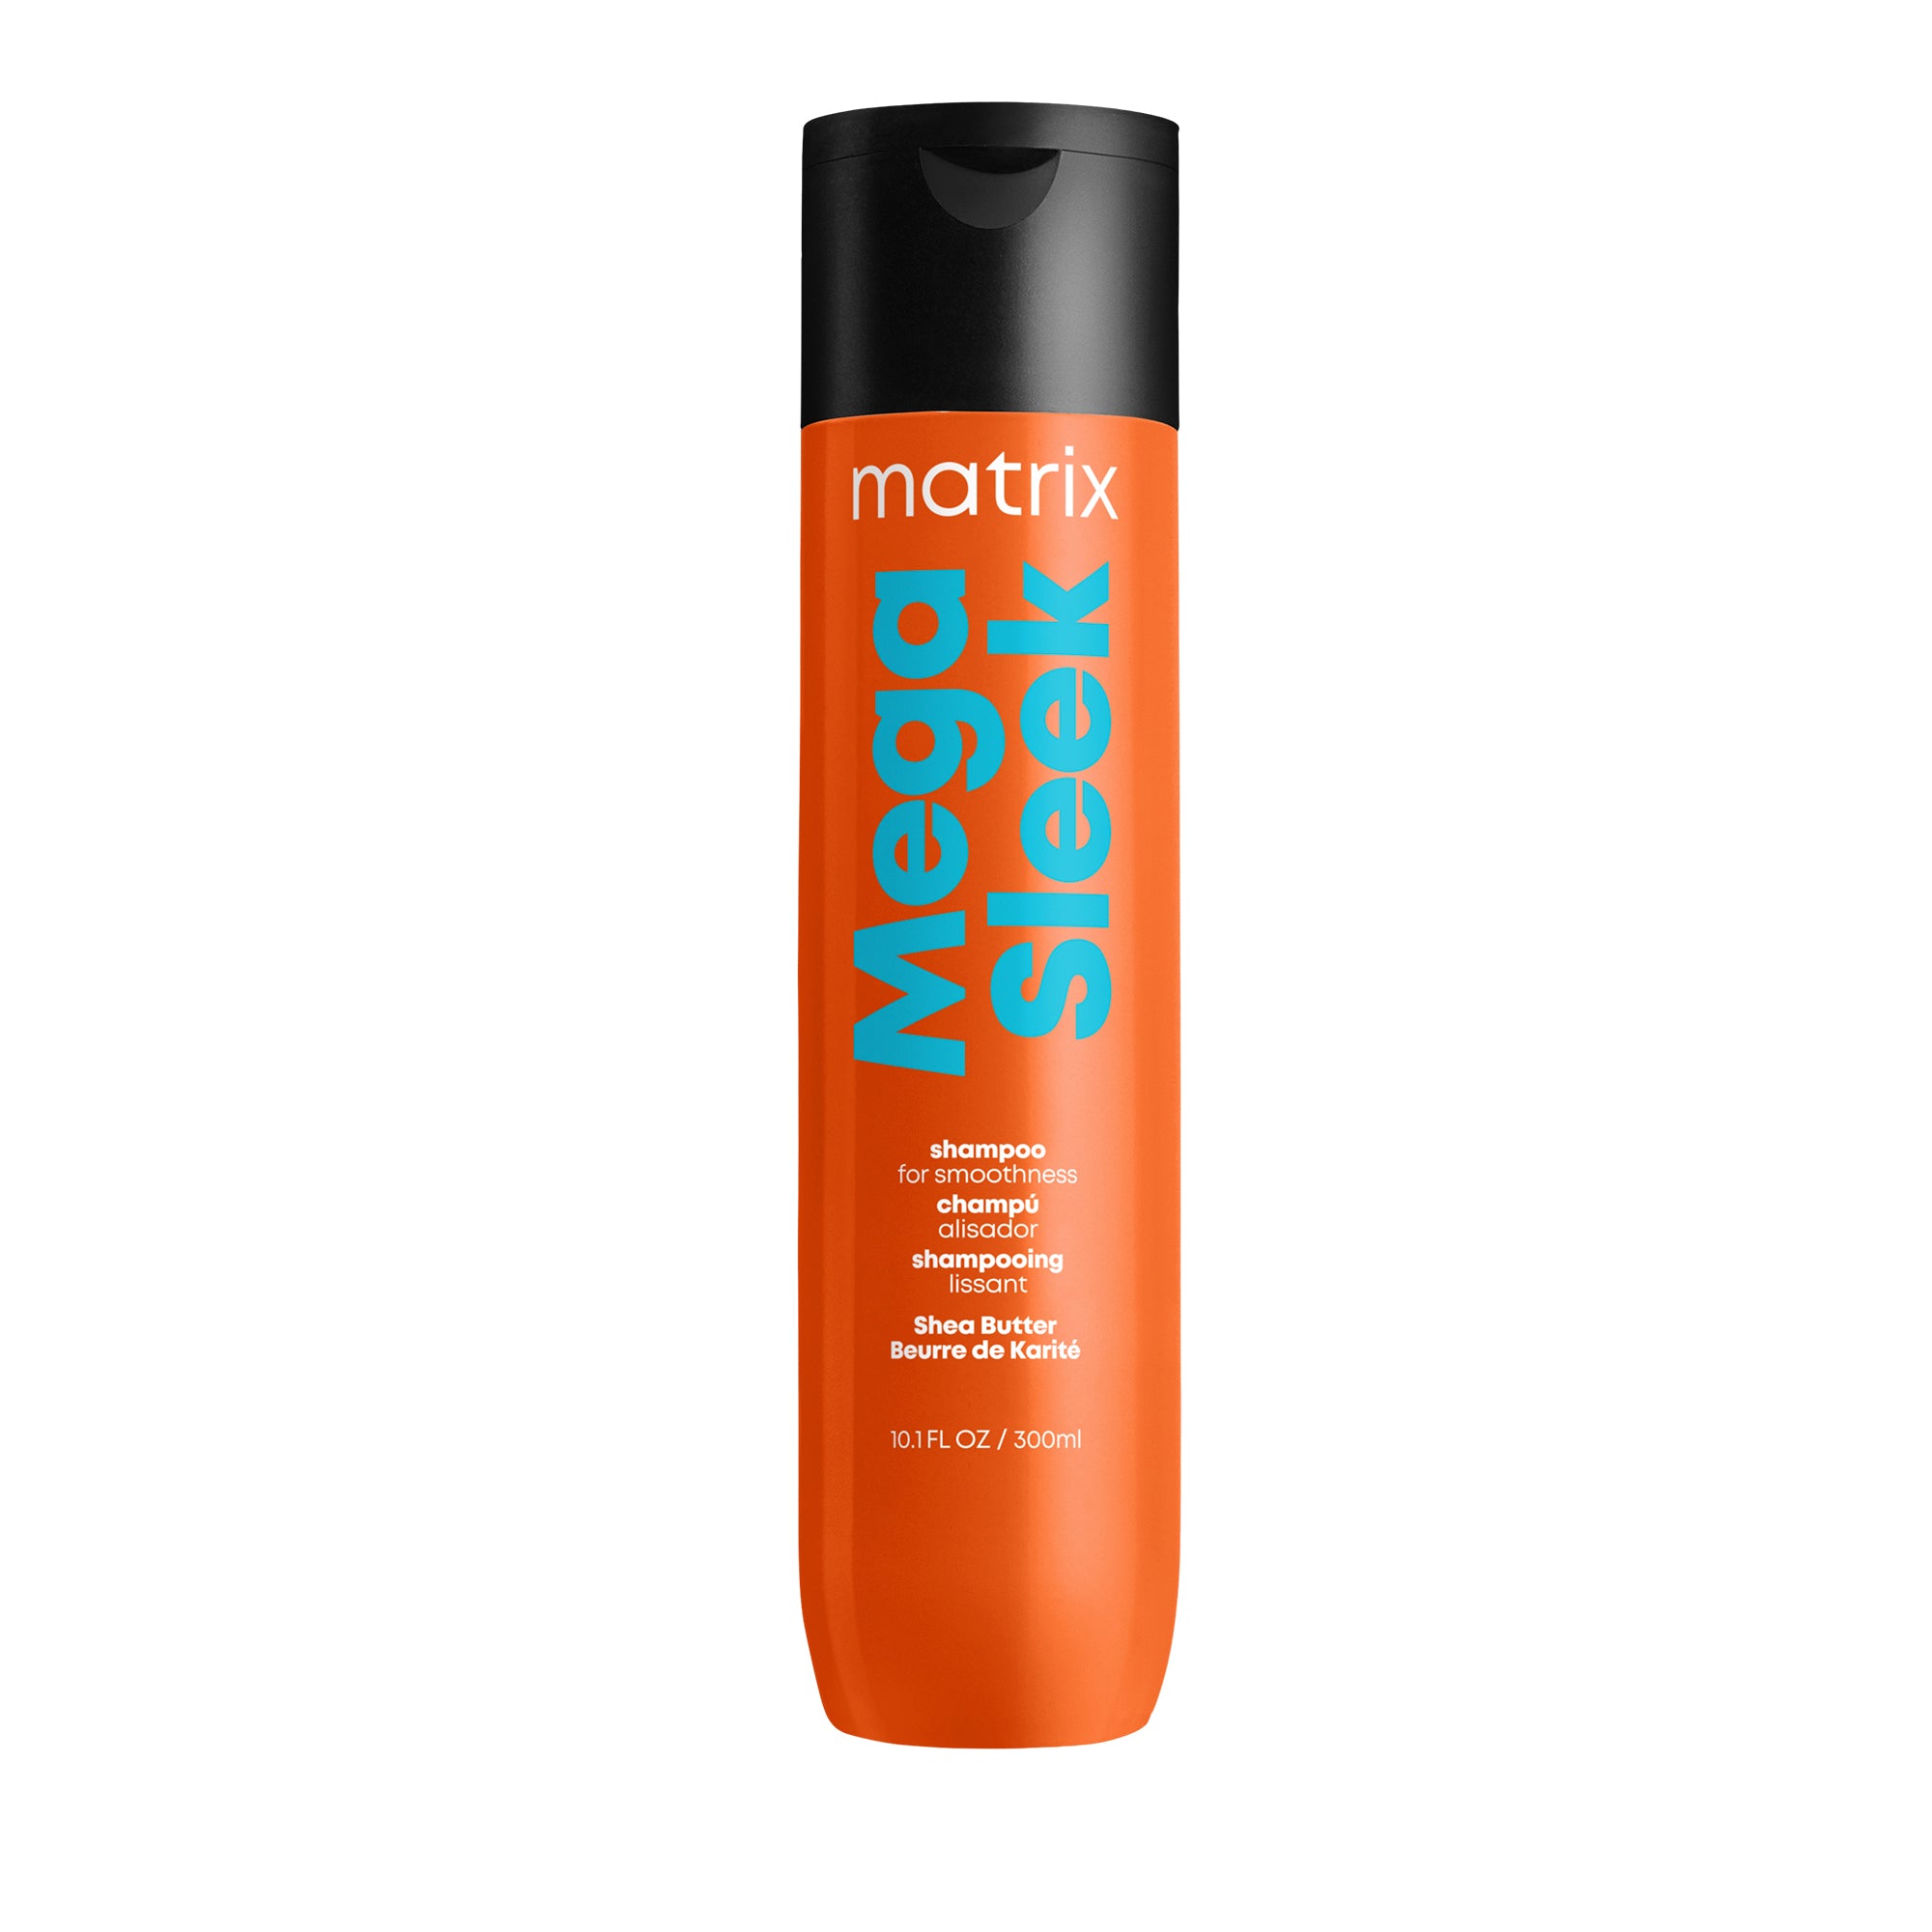 Matrix Mega Sleek Shampoo / 10 OZ